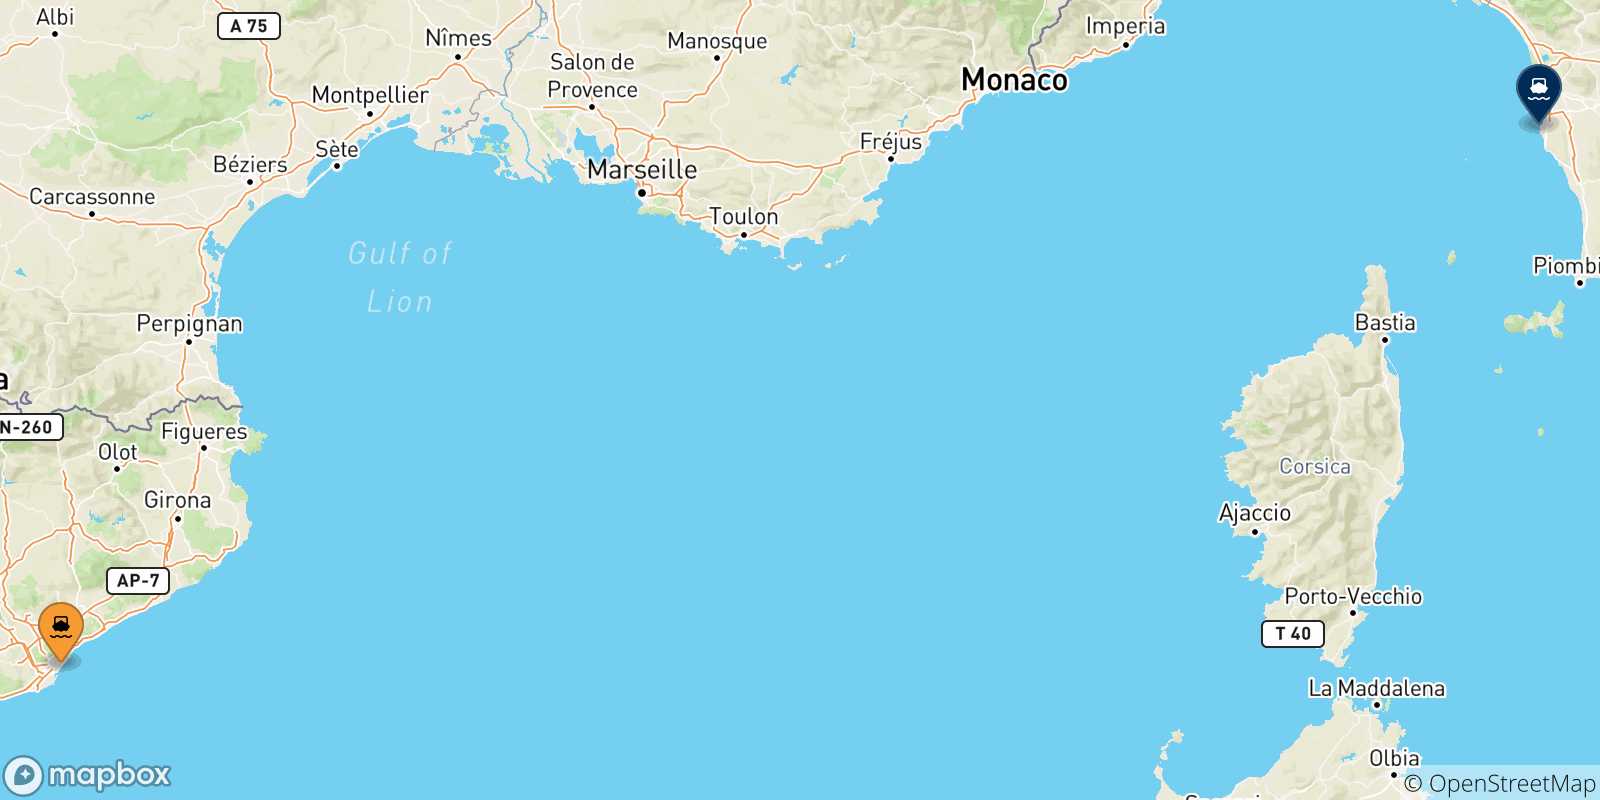 Mappa delle possibili rotte tra la Spagna e Livorno